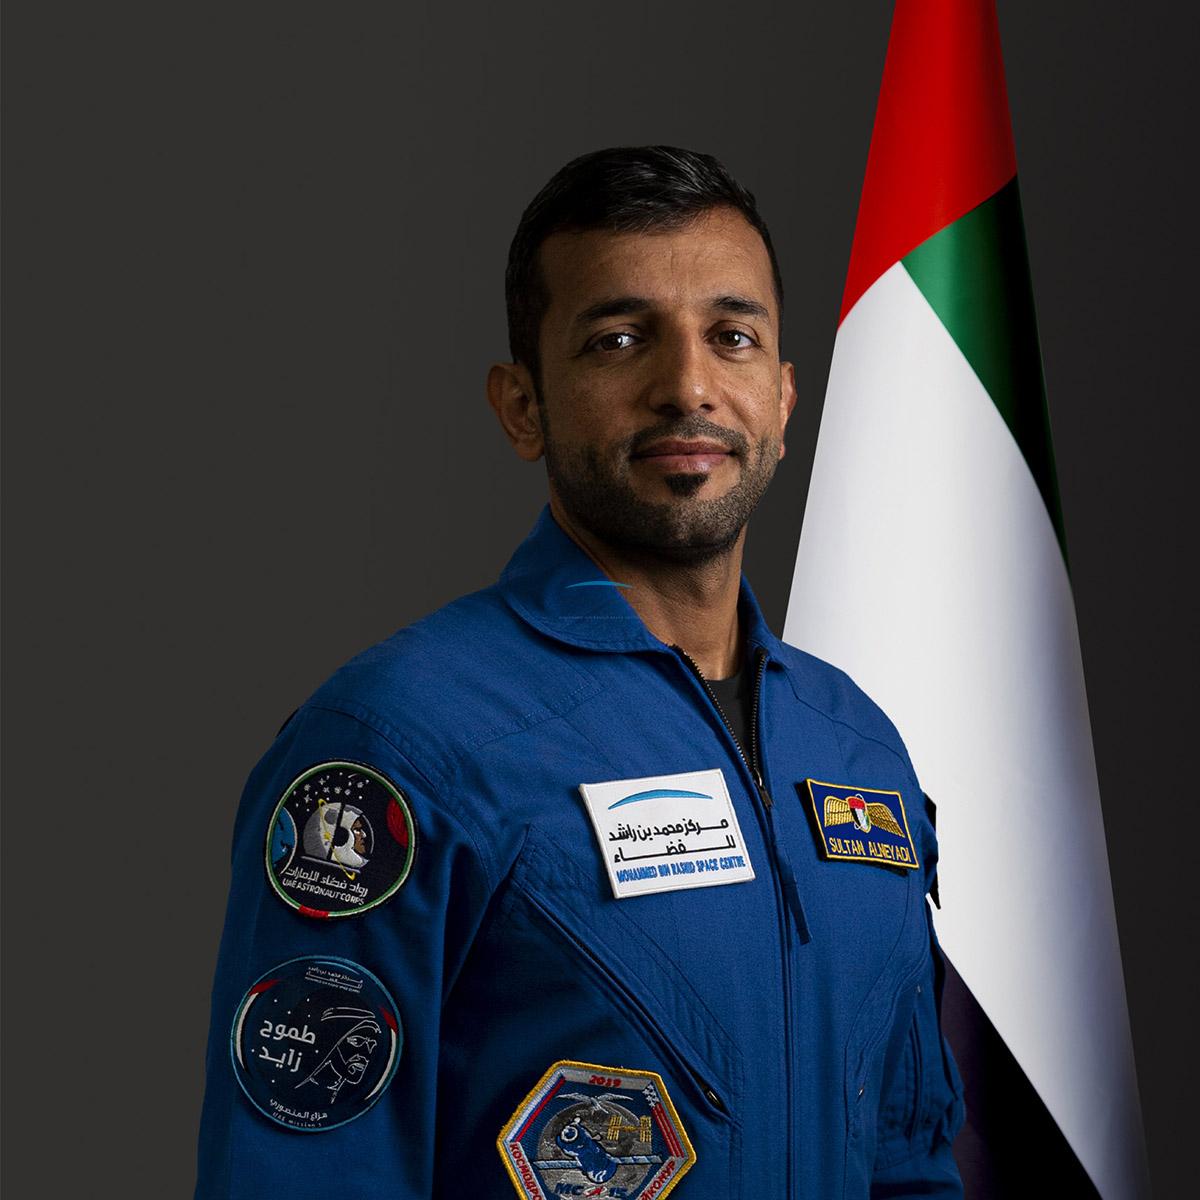 سلطان النيادي رائد الفضاء من الإمارات إلى الفضاء